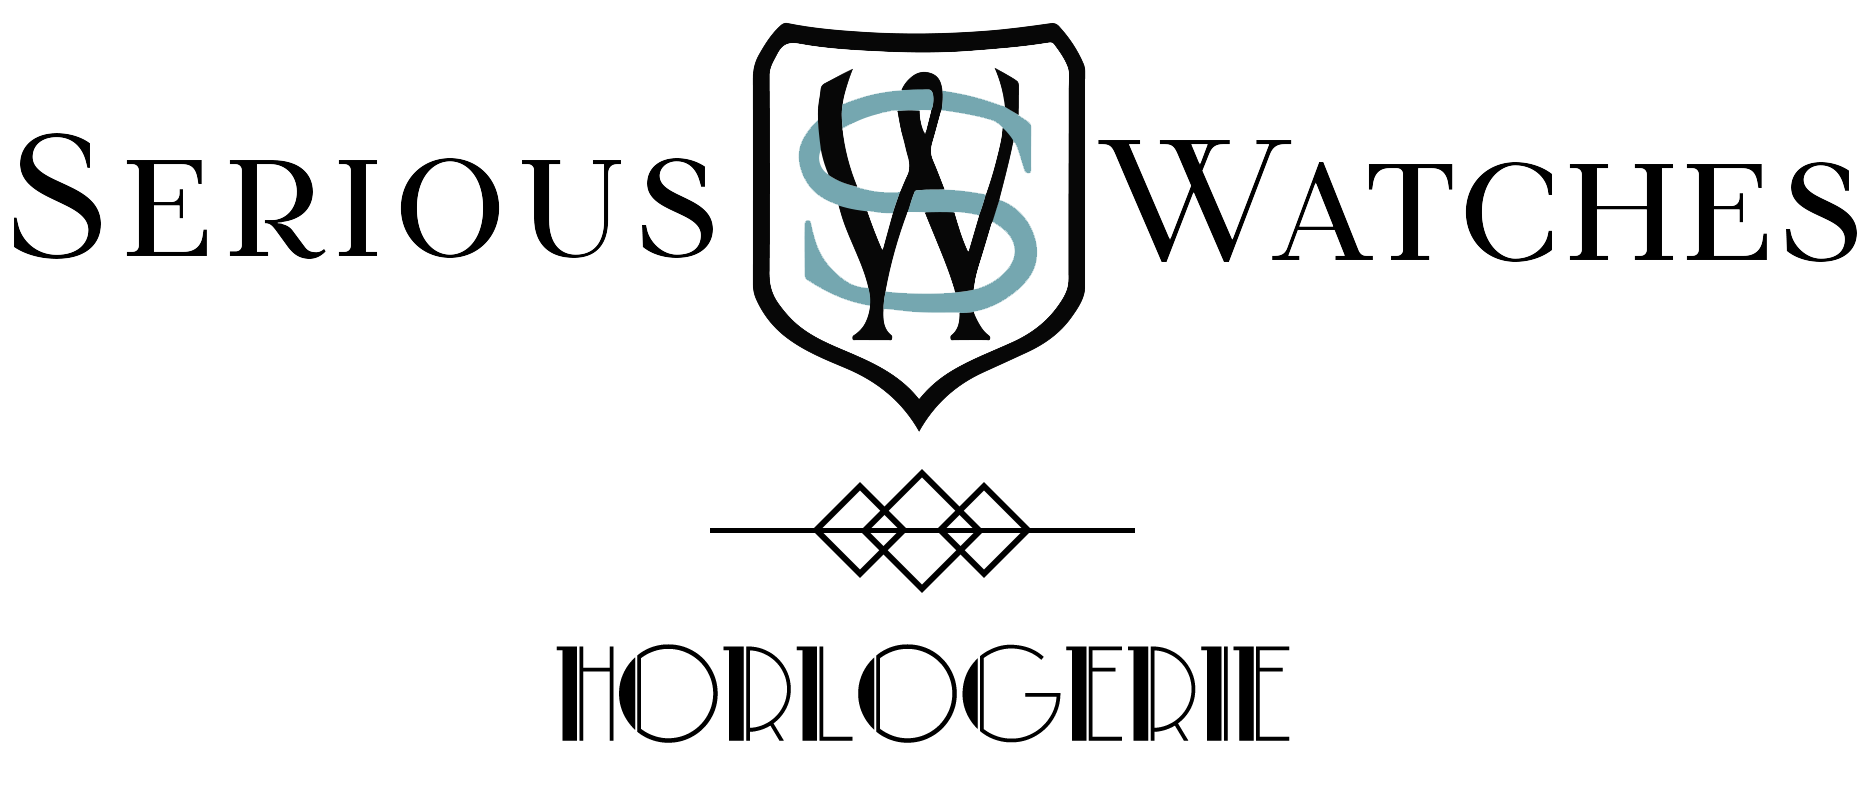 SeriousWatches logo